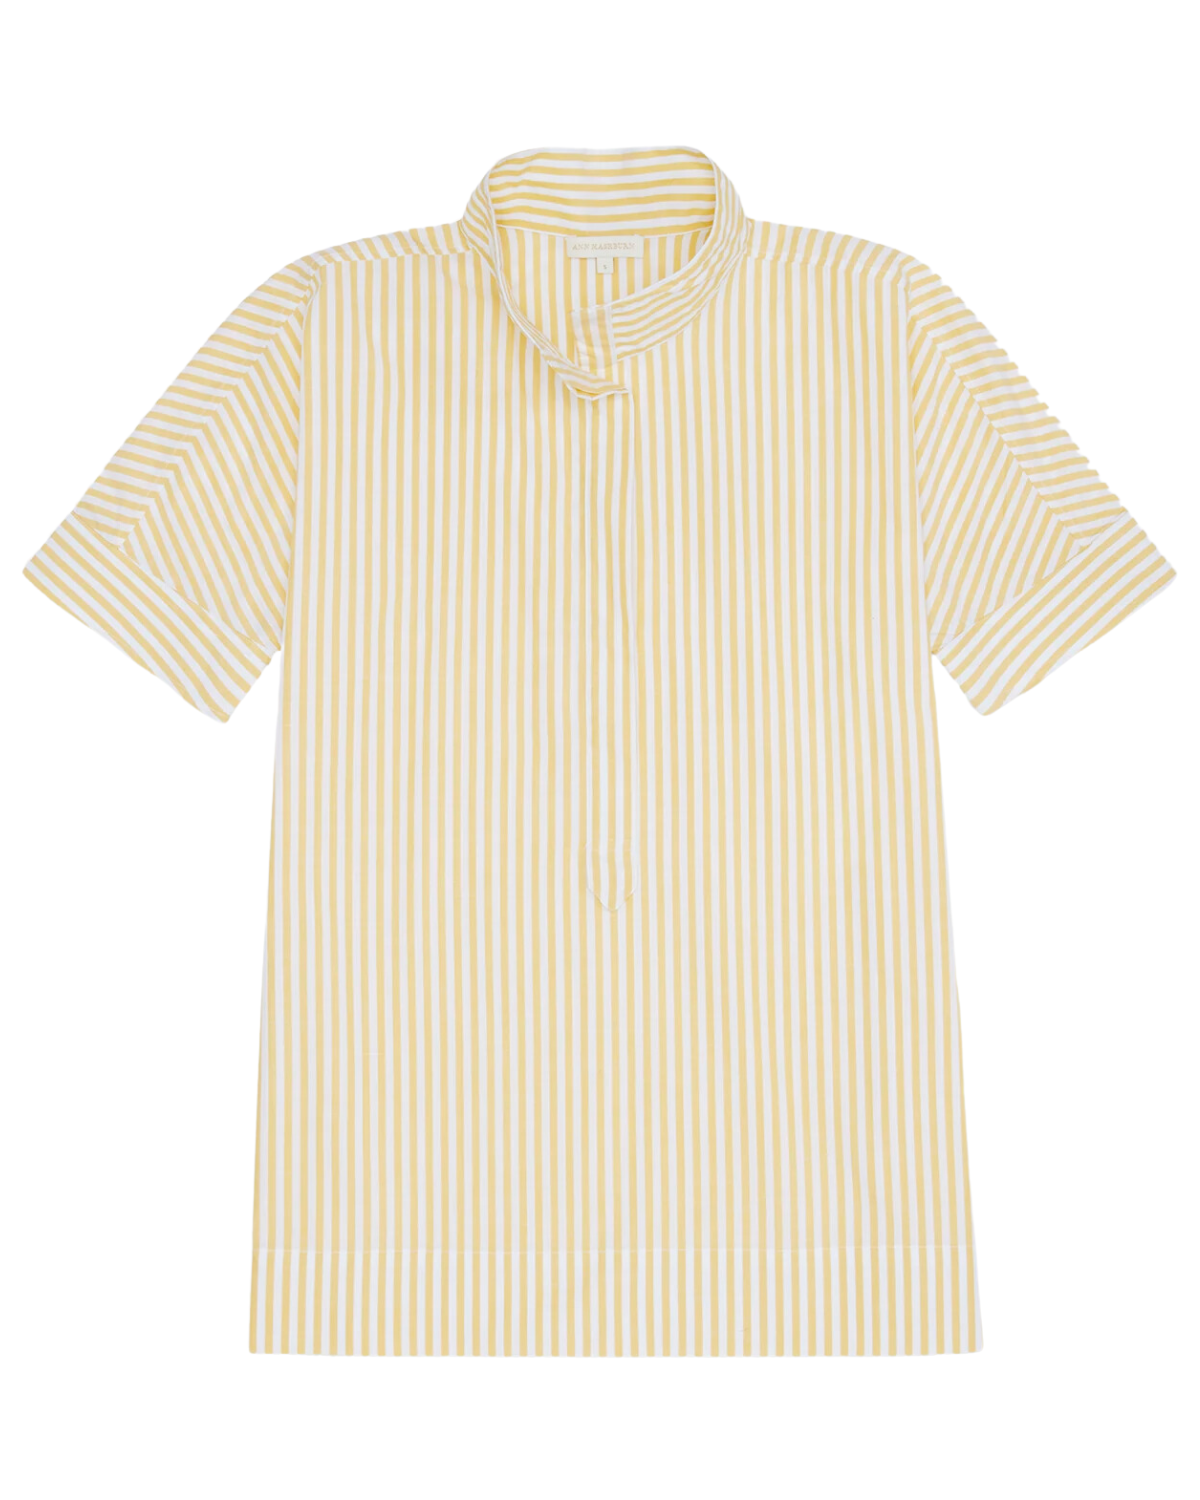 Soliel Shirt (Gold/Natural Chambray Stripe)